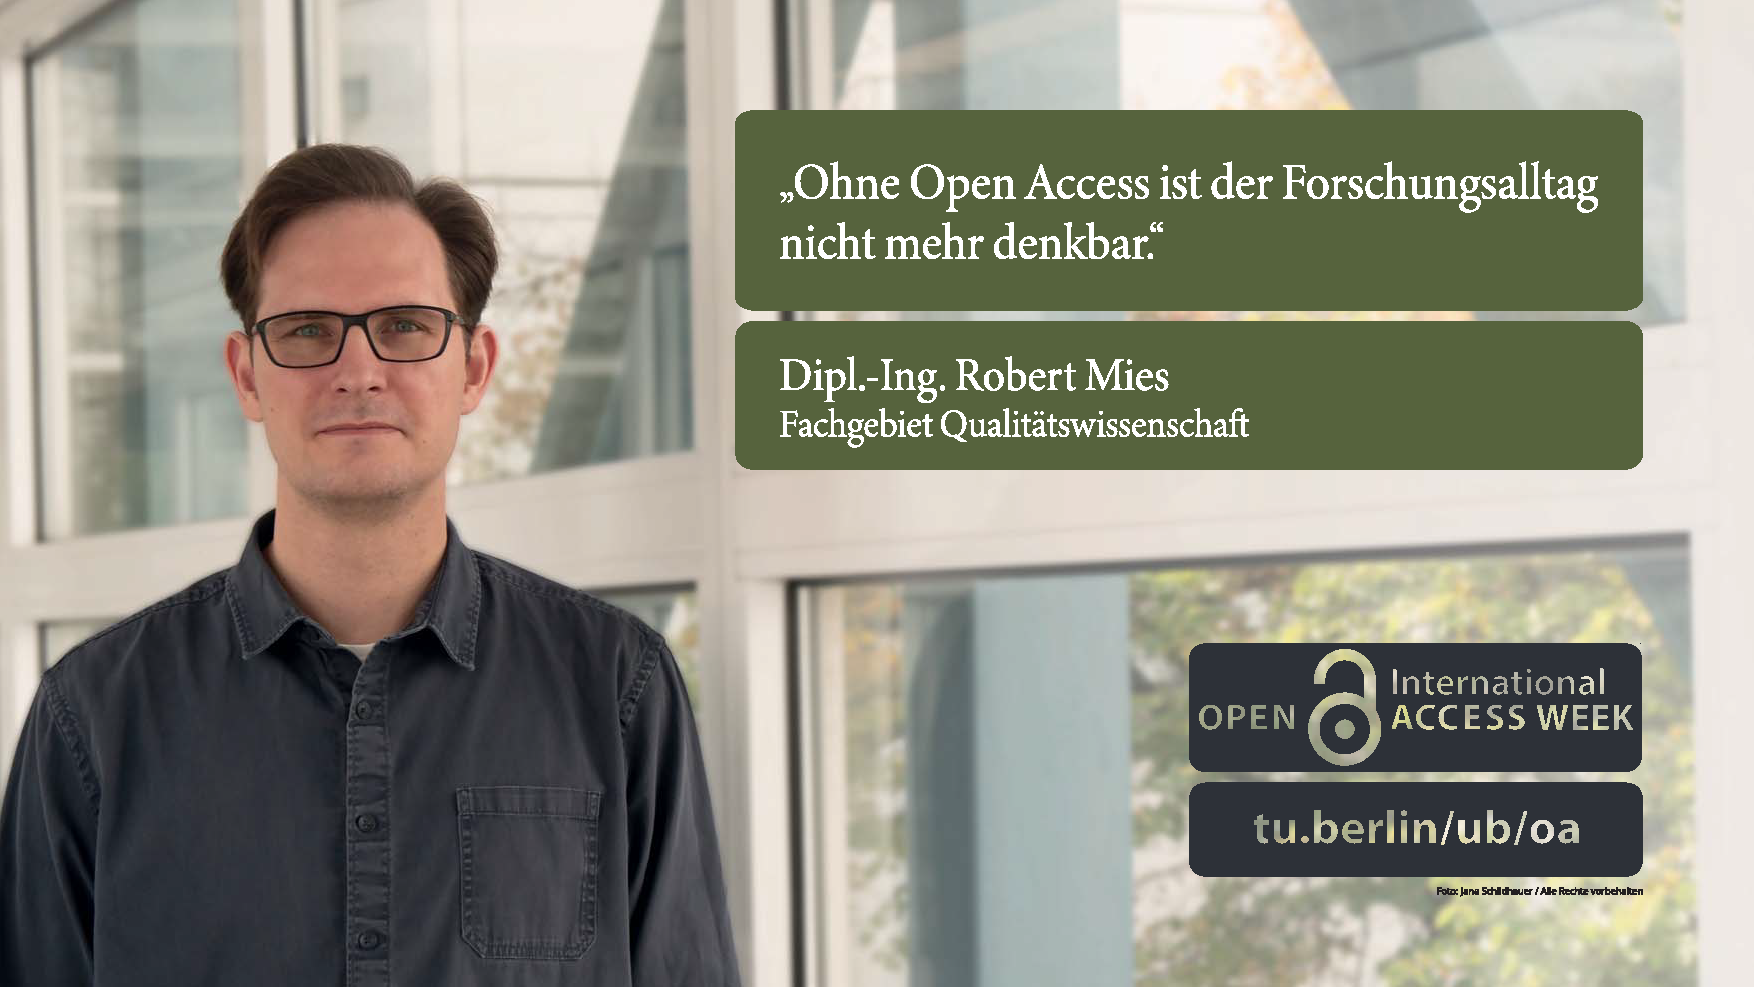 Foto von Dipl.-Ing Robert Mies (Fachgebiet Qualitätswissenschaft) und sein Zitat "Ohne Open Access ist der Forschungsalltag nicht mehr denkbar."